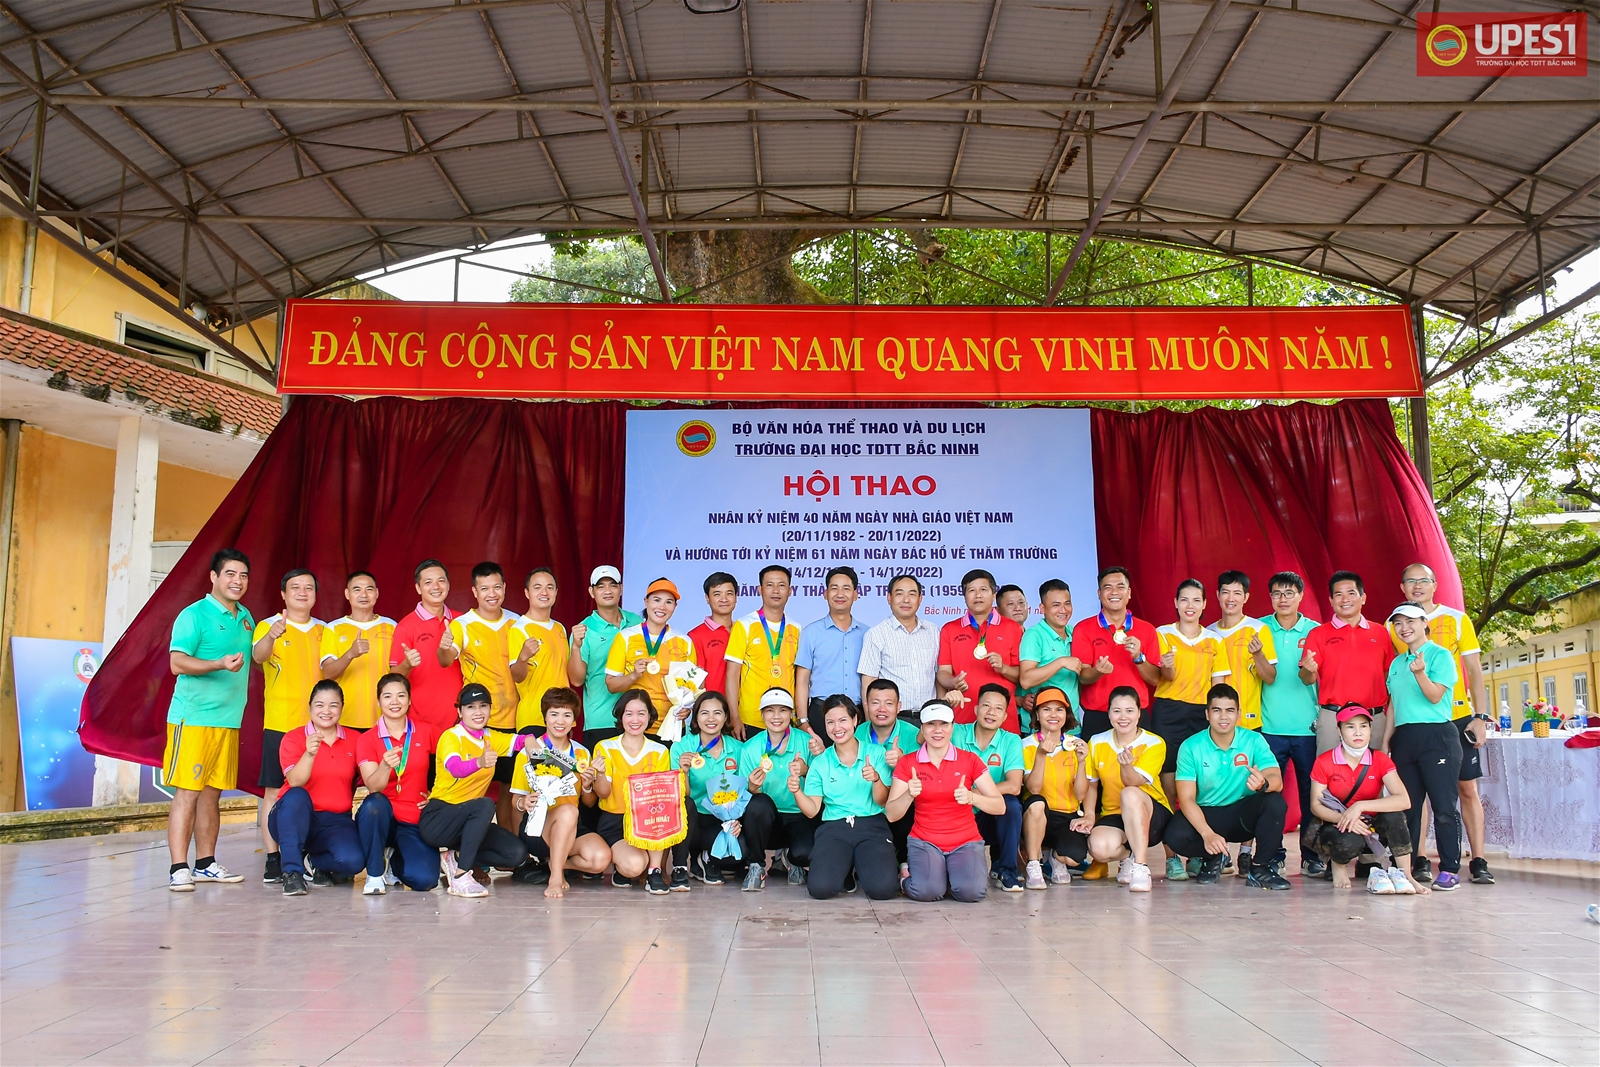 Trường Đại học TDTT Bắc Ninh tổ chức thành công Hội thao Người giáo viên nhân dân Trường Đại học TDTT Bắc Ninh năm 2022